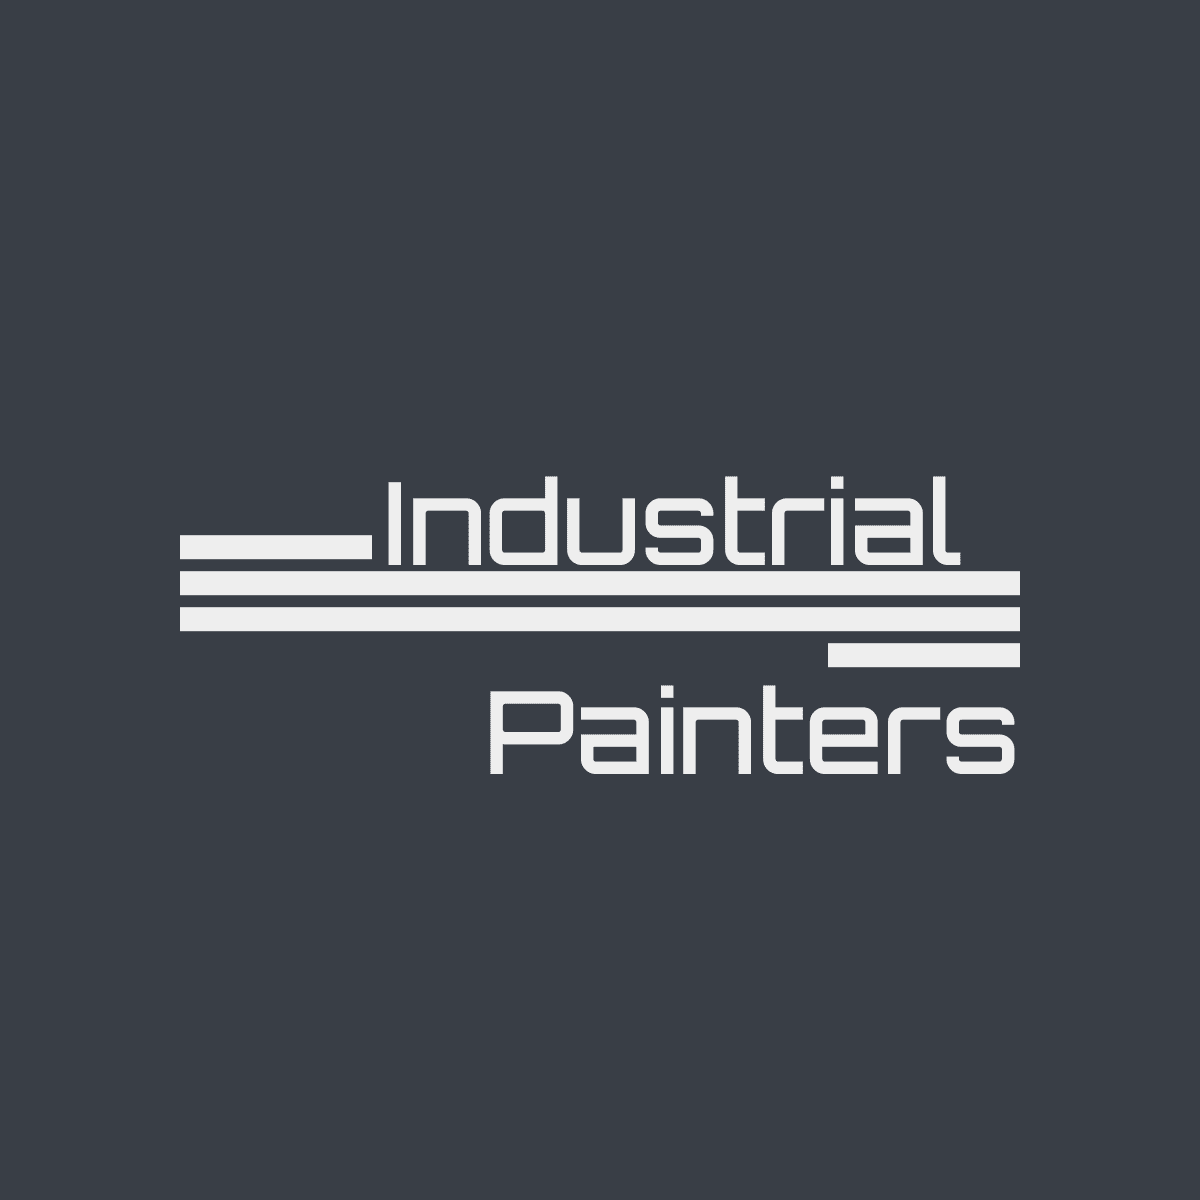 Industrial Painters